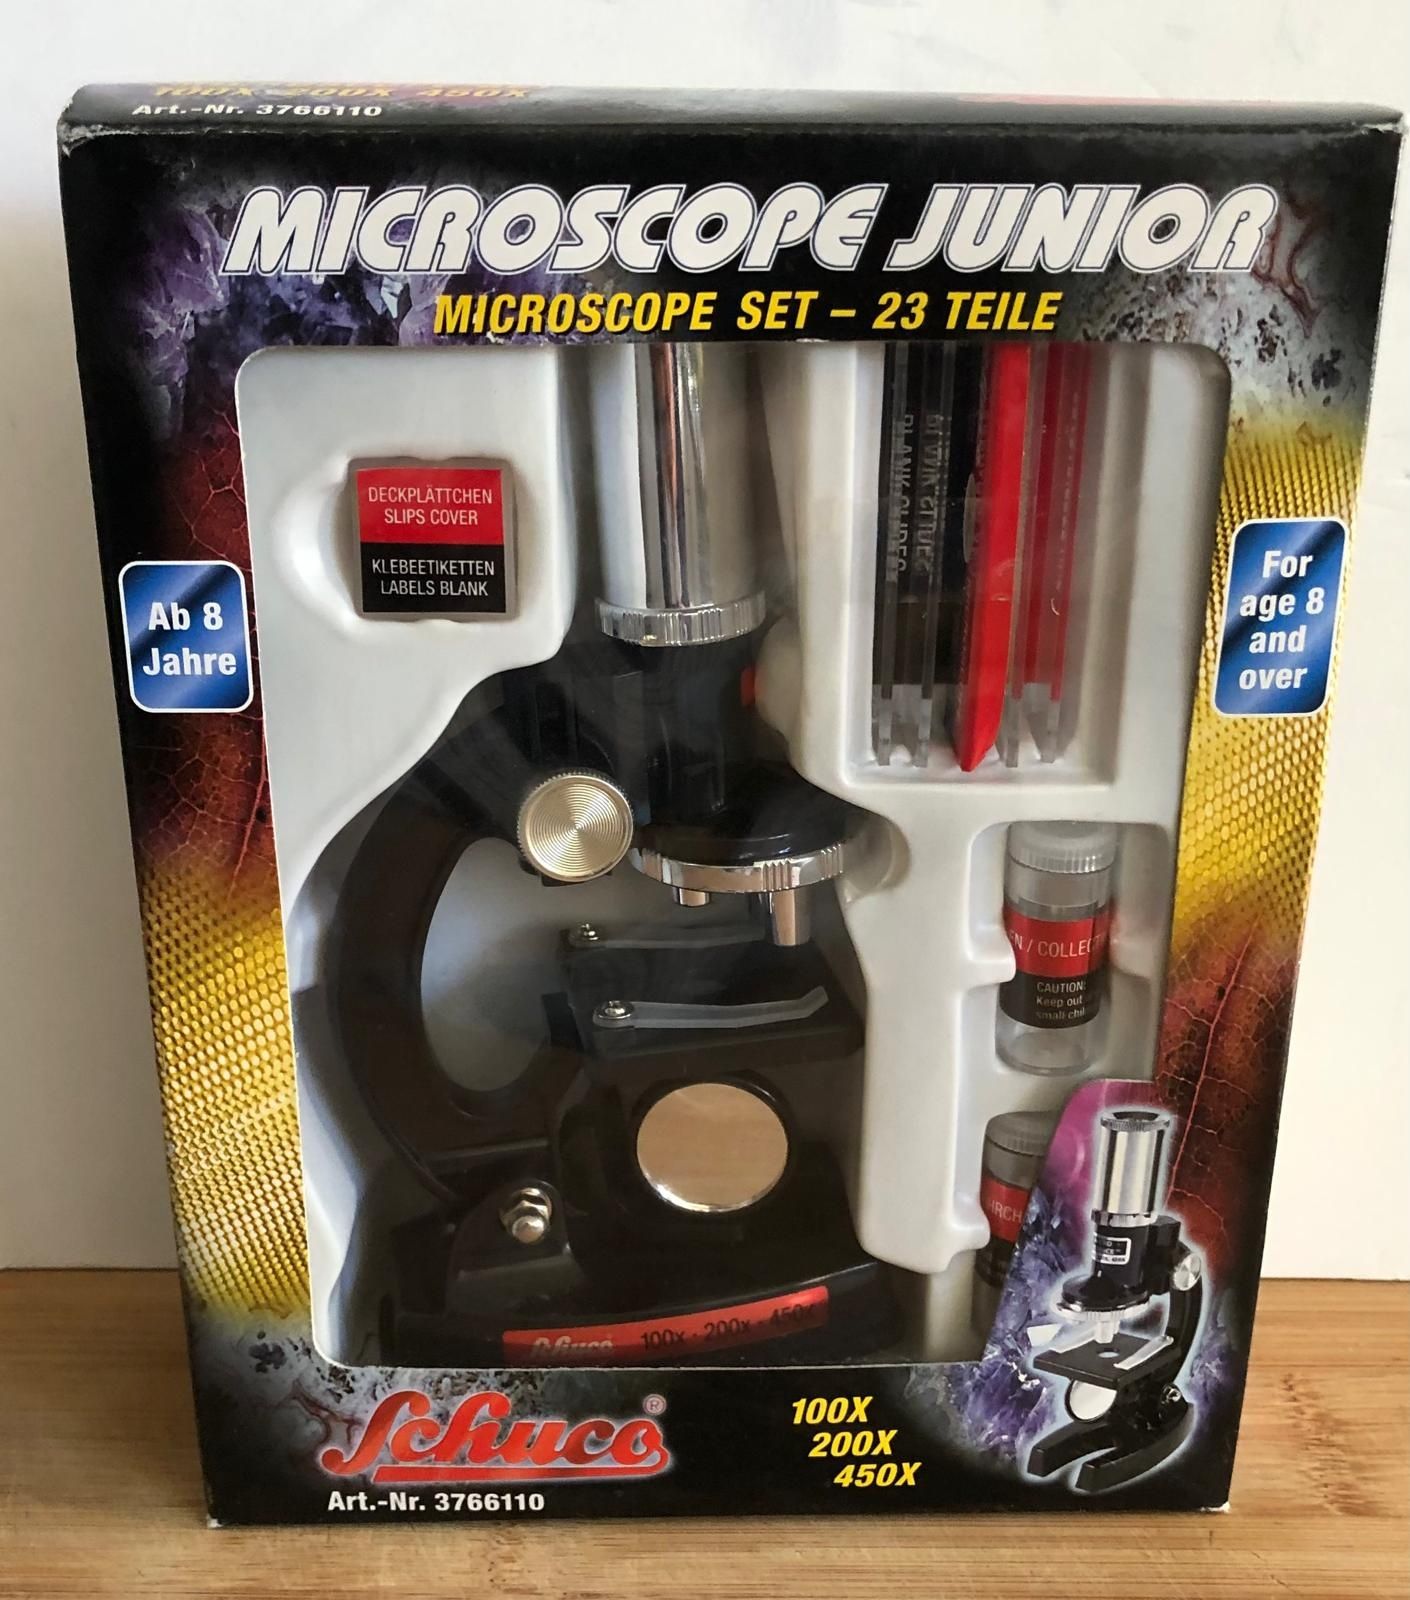 Microscópio junior Novo